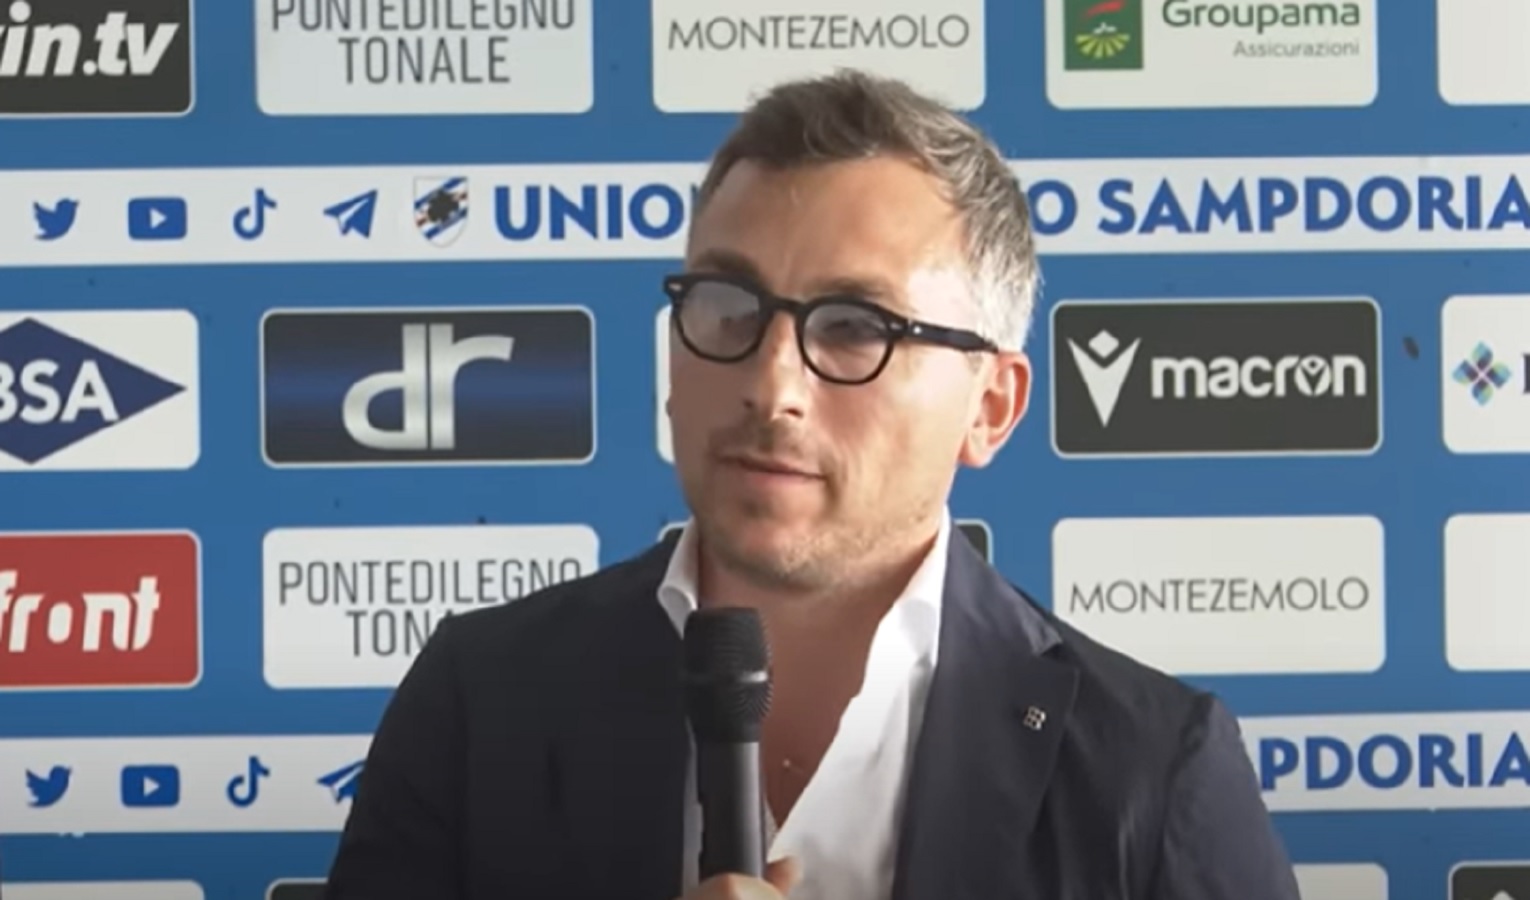 Sampdoria, Manfredi nuovo presidente. Nel cda Molango, ex ad del Mallorca